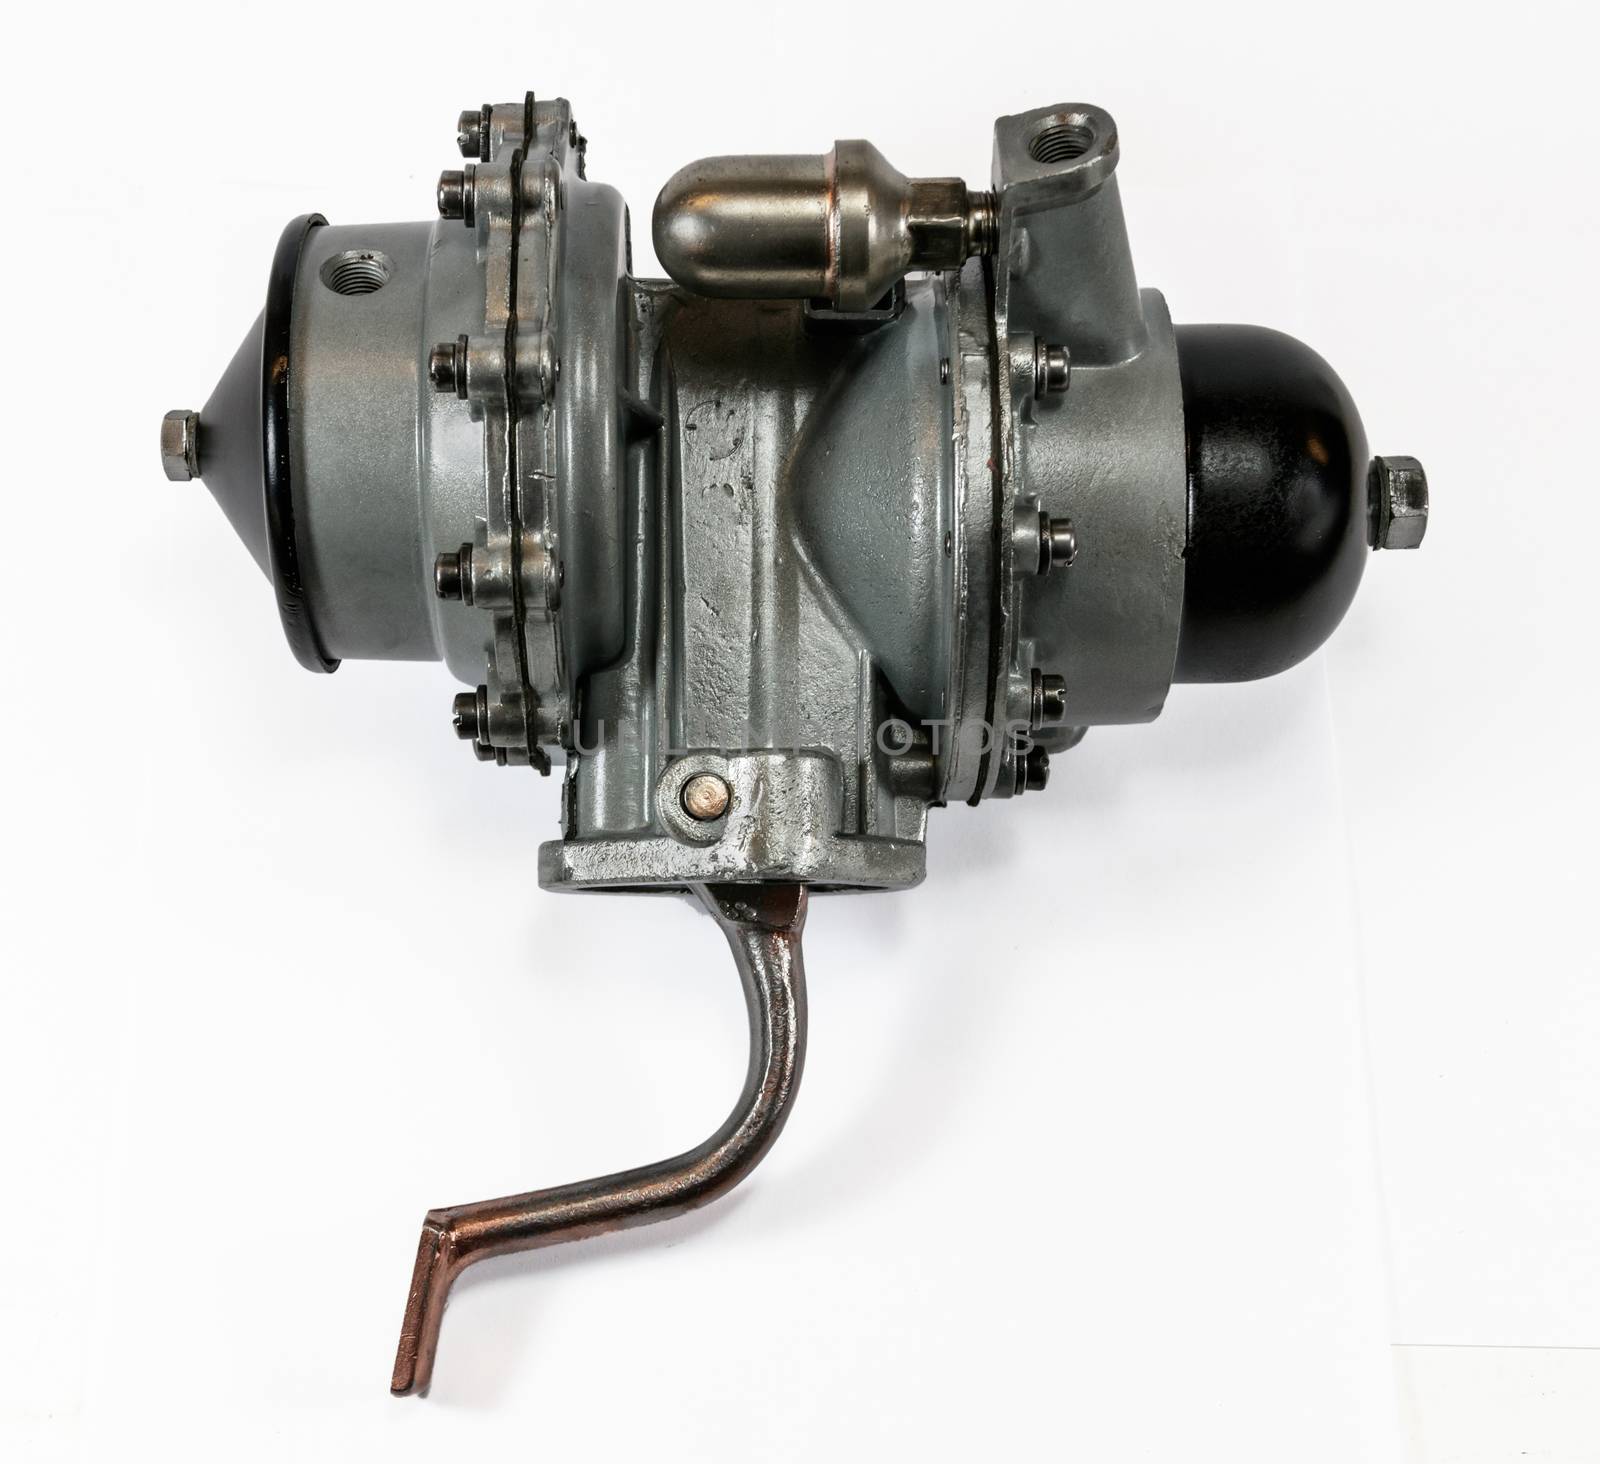 Antique vintage automotive mechanical dual action fuel pump assembly